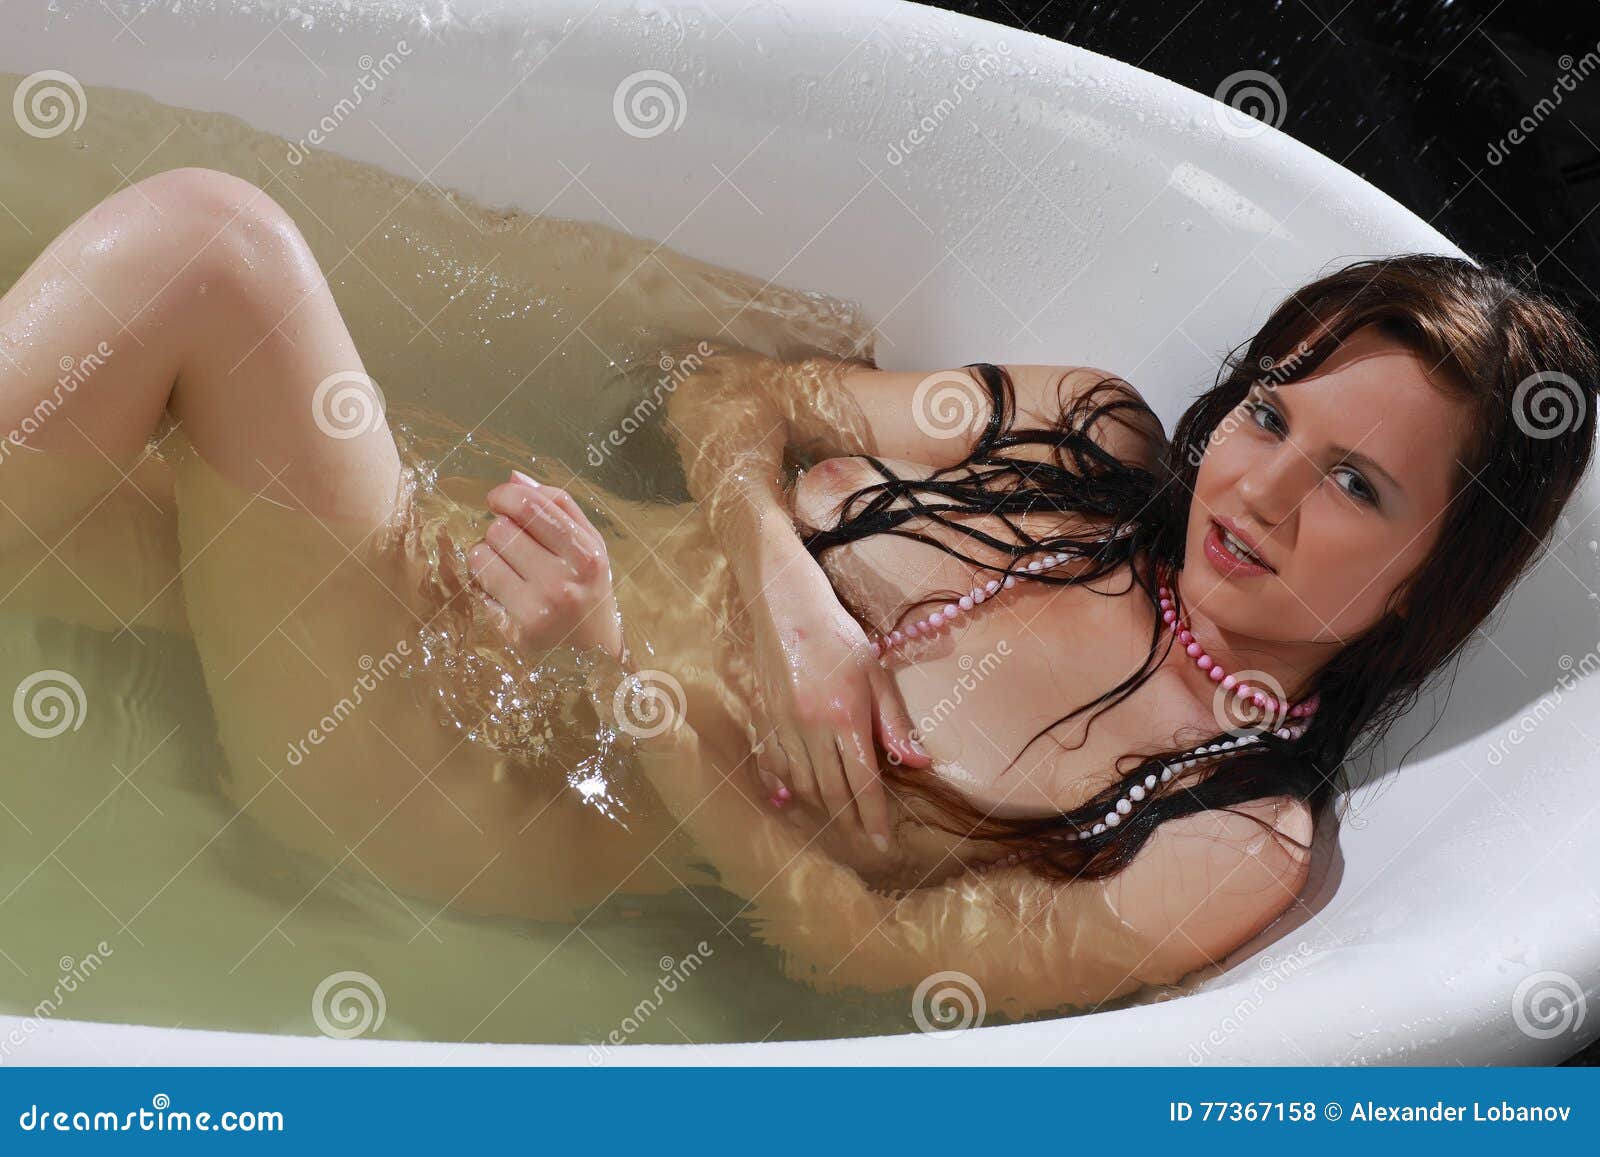 girl in bath nude